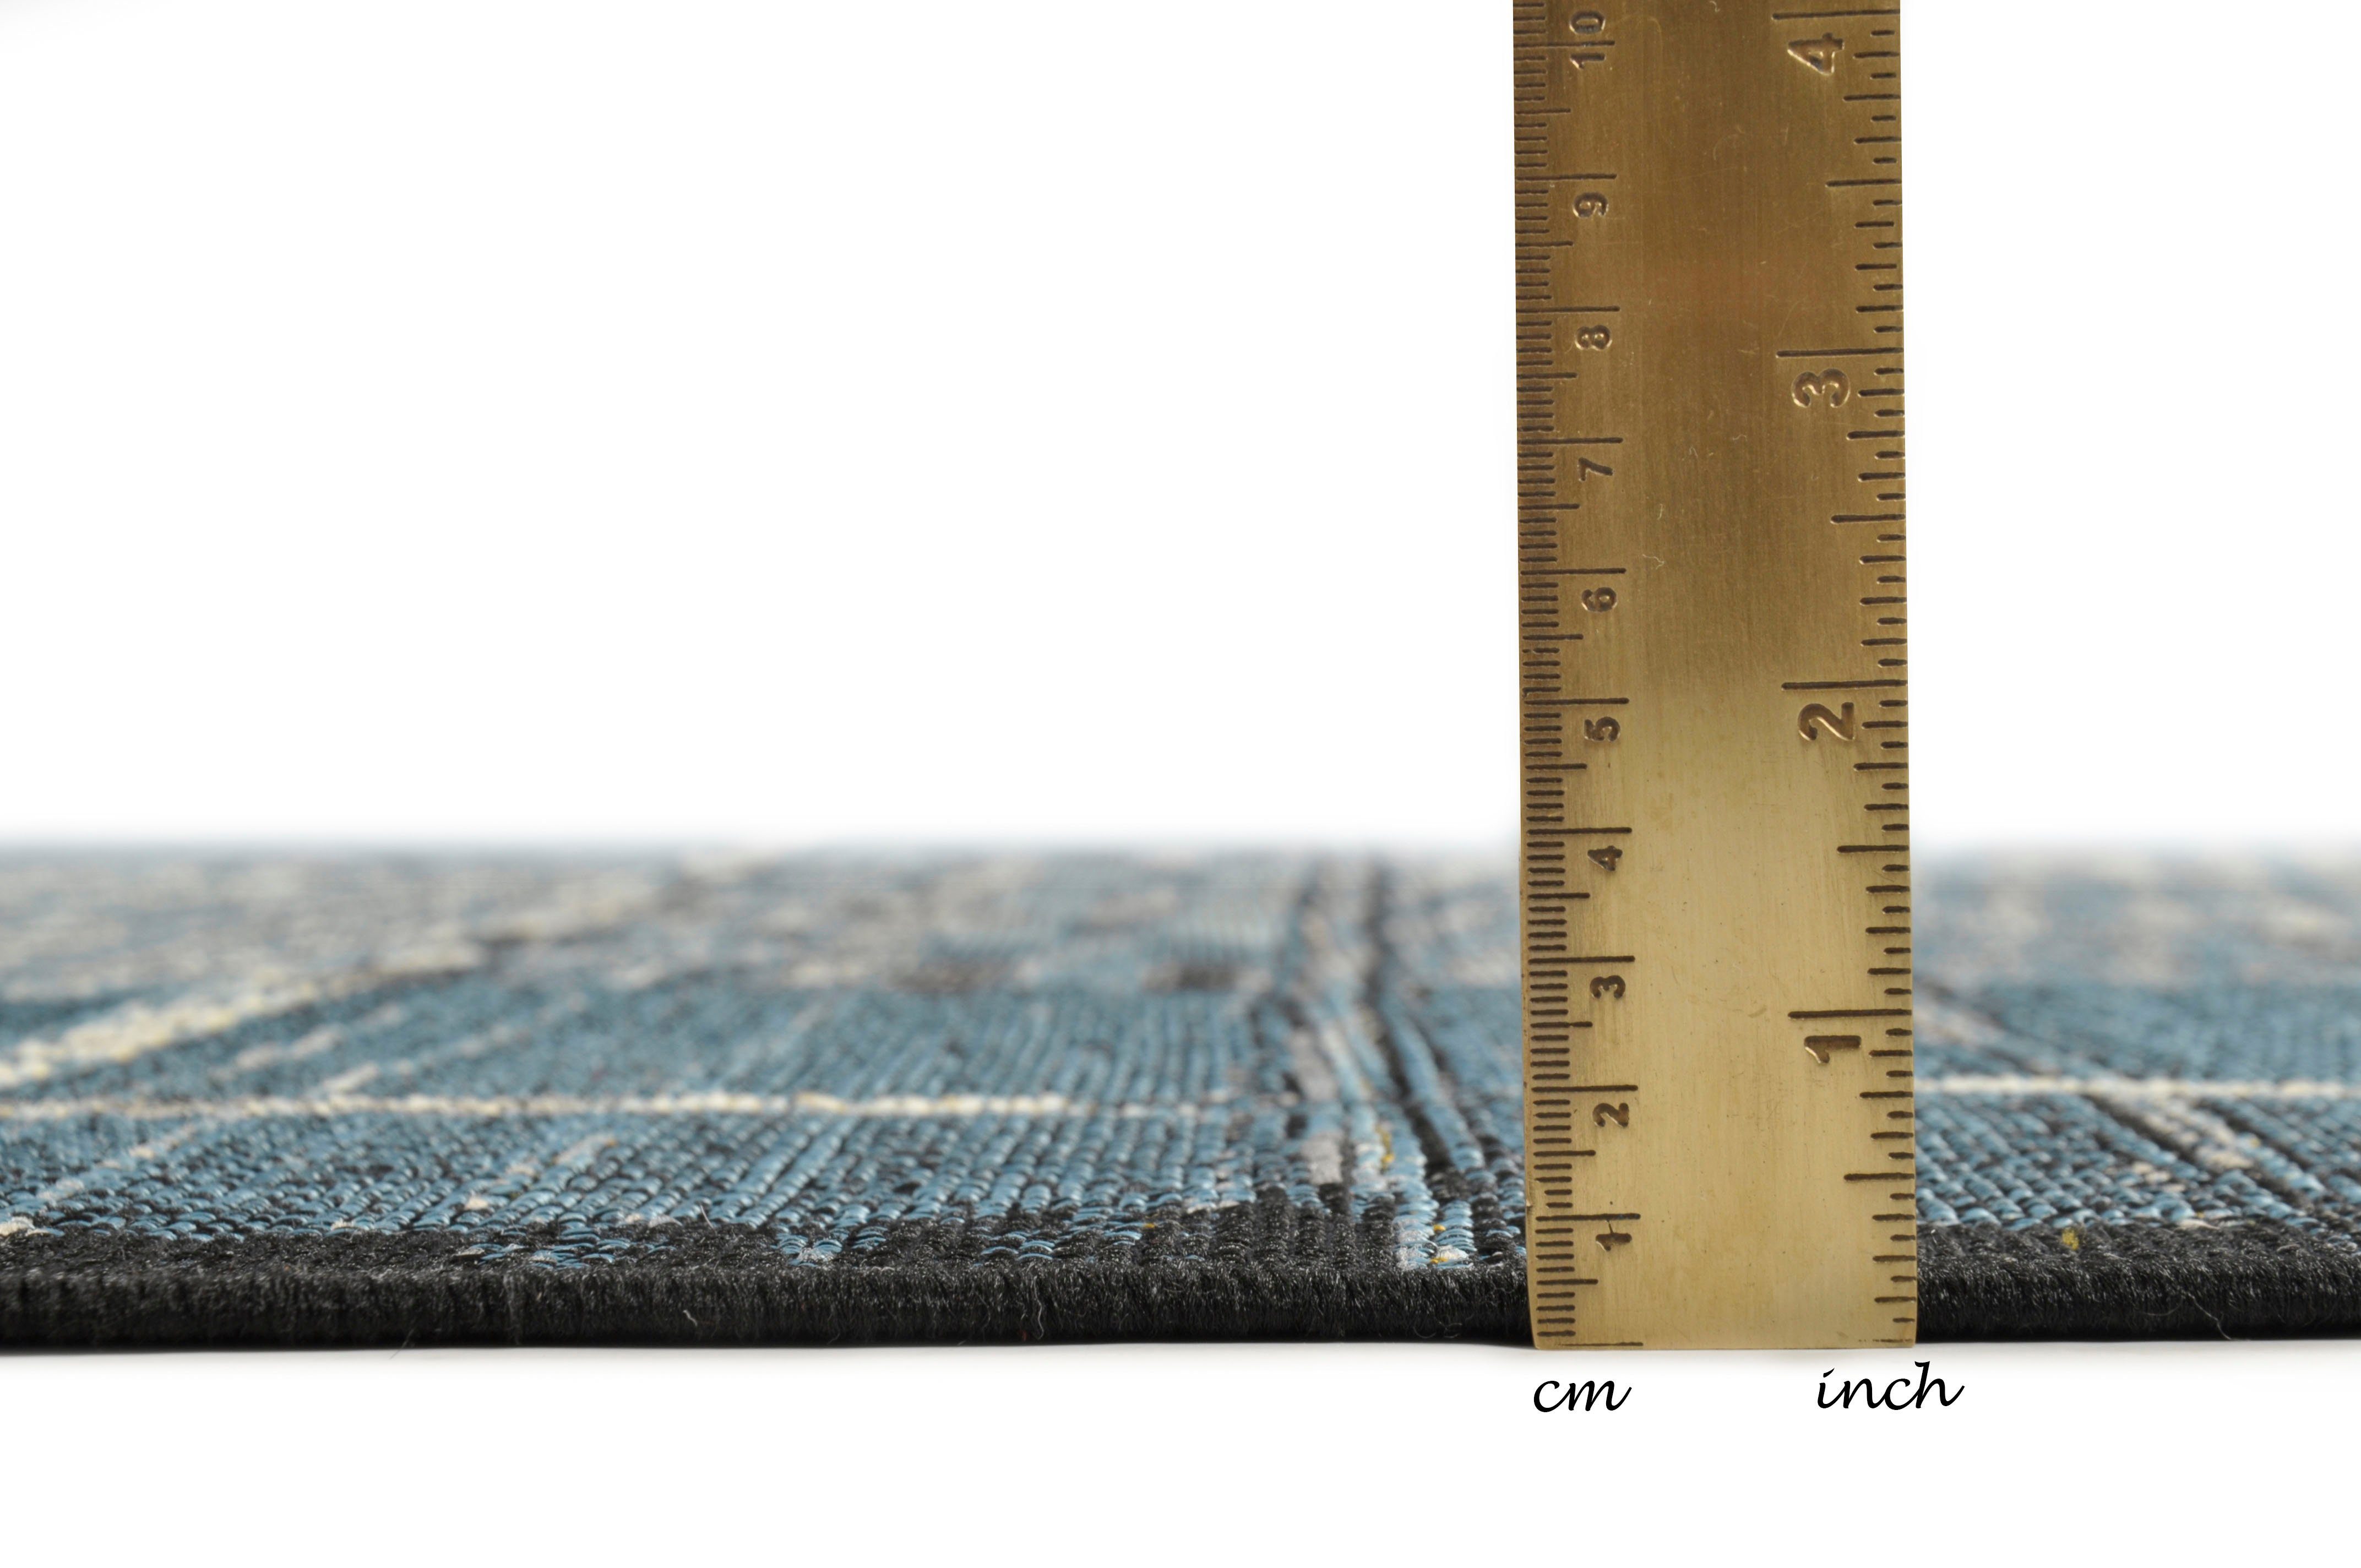 Teppich Outdoor-Africa 38, Gino Falcone, und mm, blau In- Outdoor Style, Flachgewebe, rechteckig, Höhe: 5 Ethno geeignet